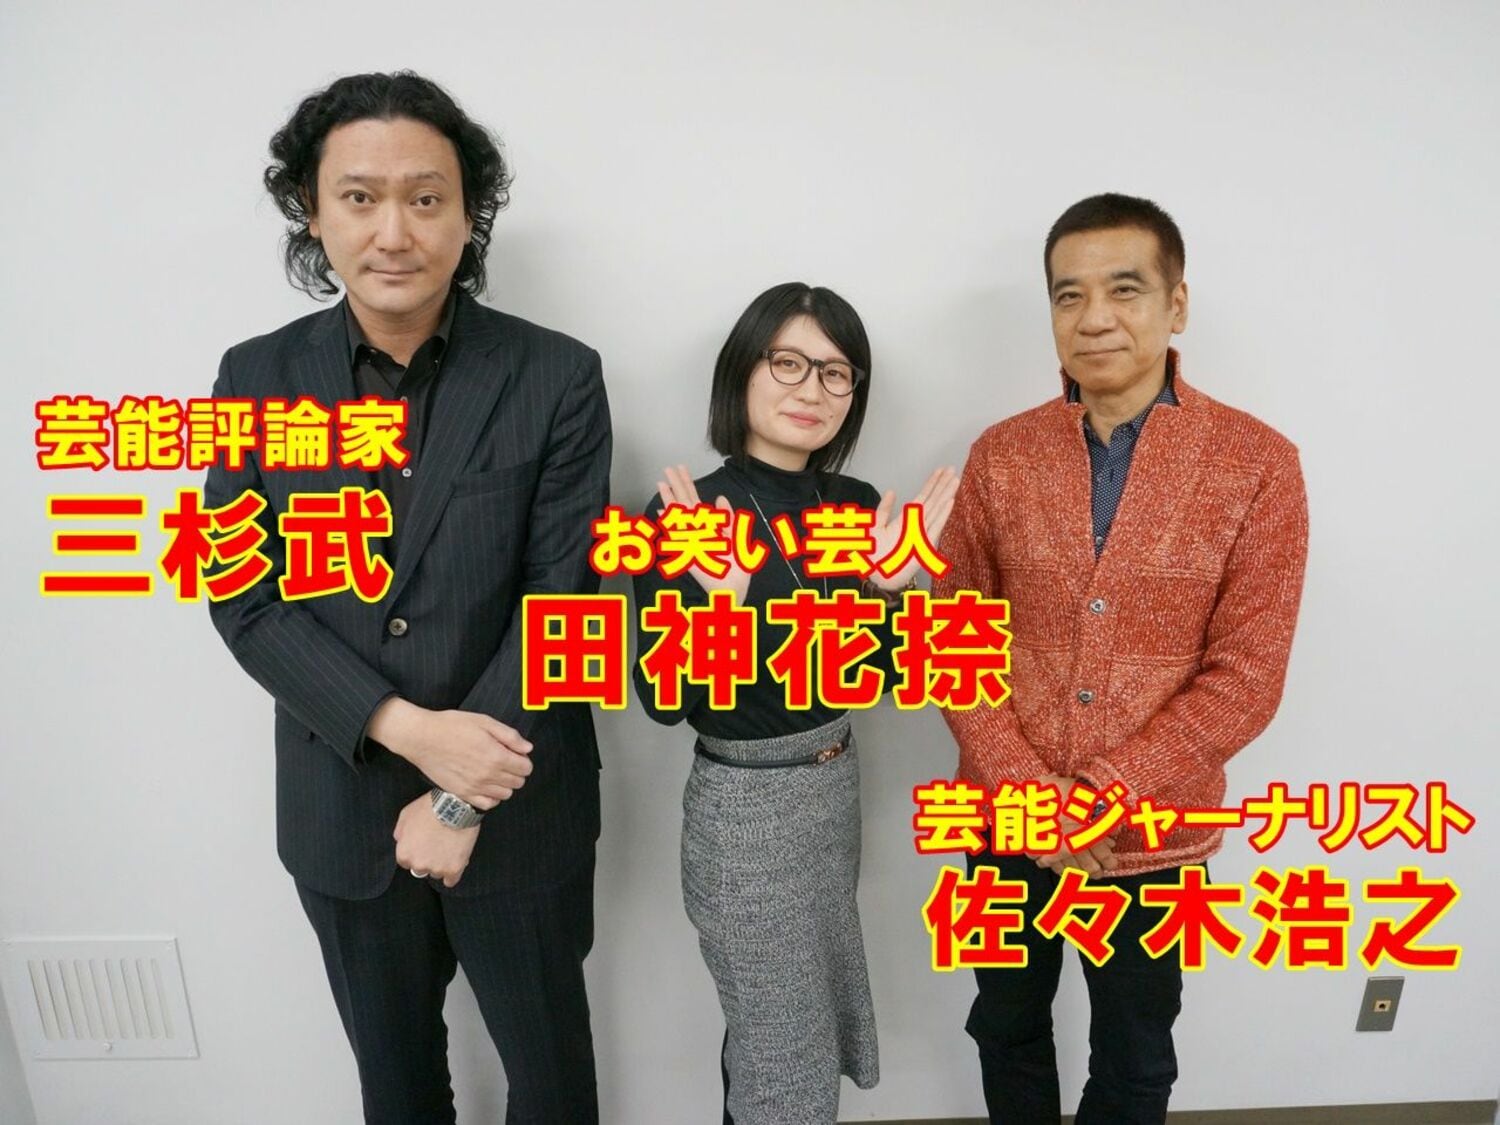 日本テレビ岩本乃蒼アナが社内結婚「日テレは離婚率が高い!?」の画像